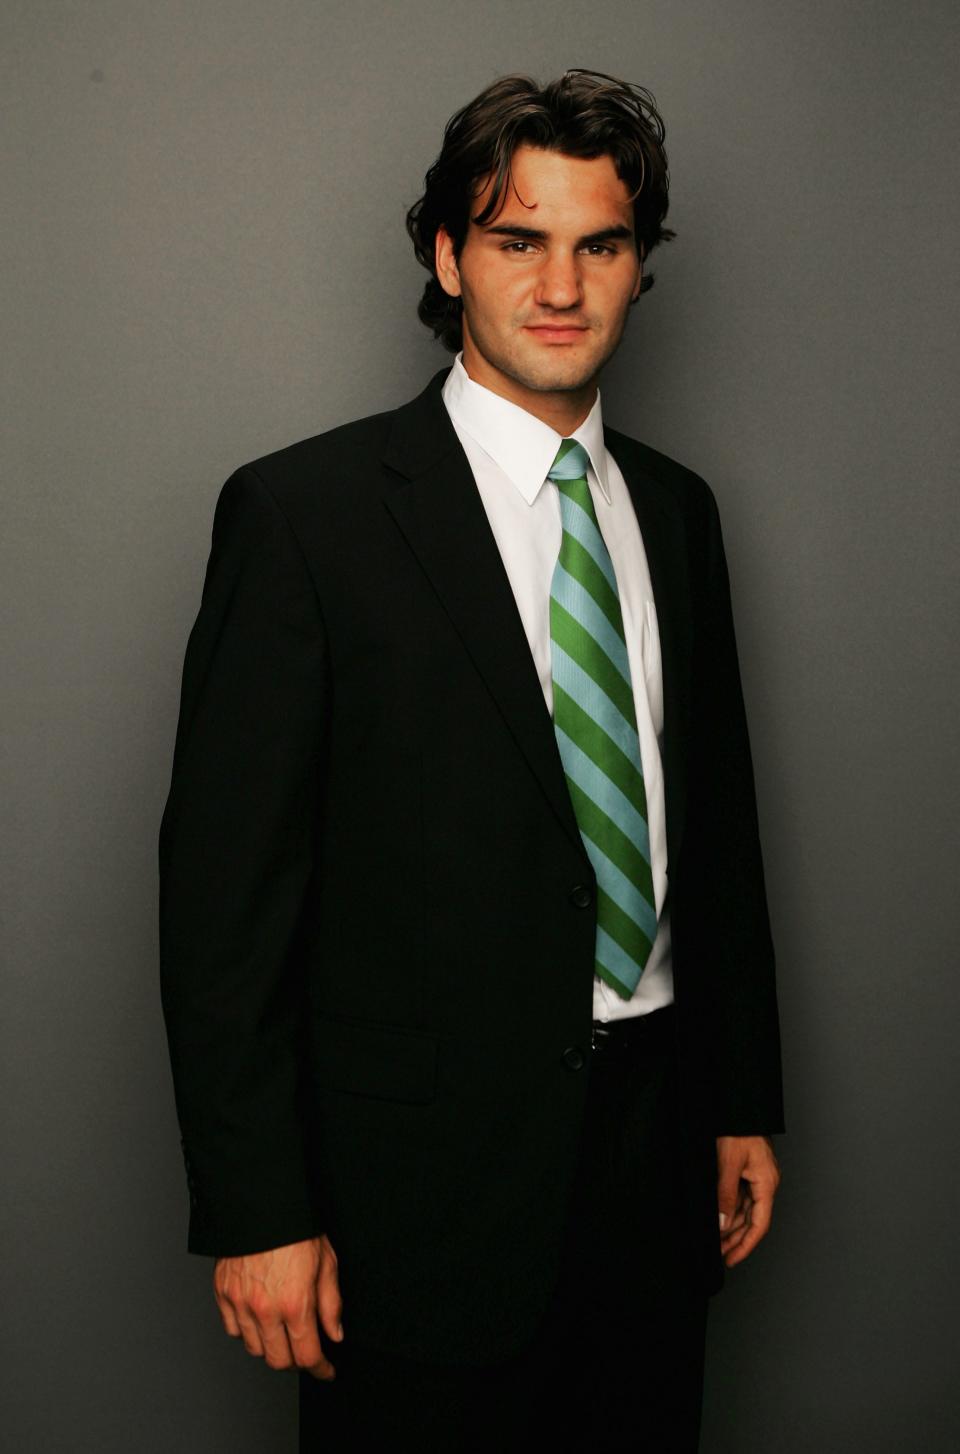 Roger Federer, age 23